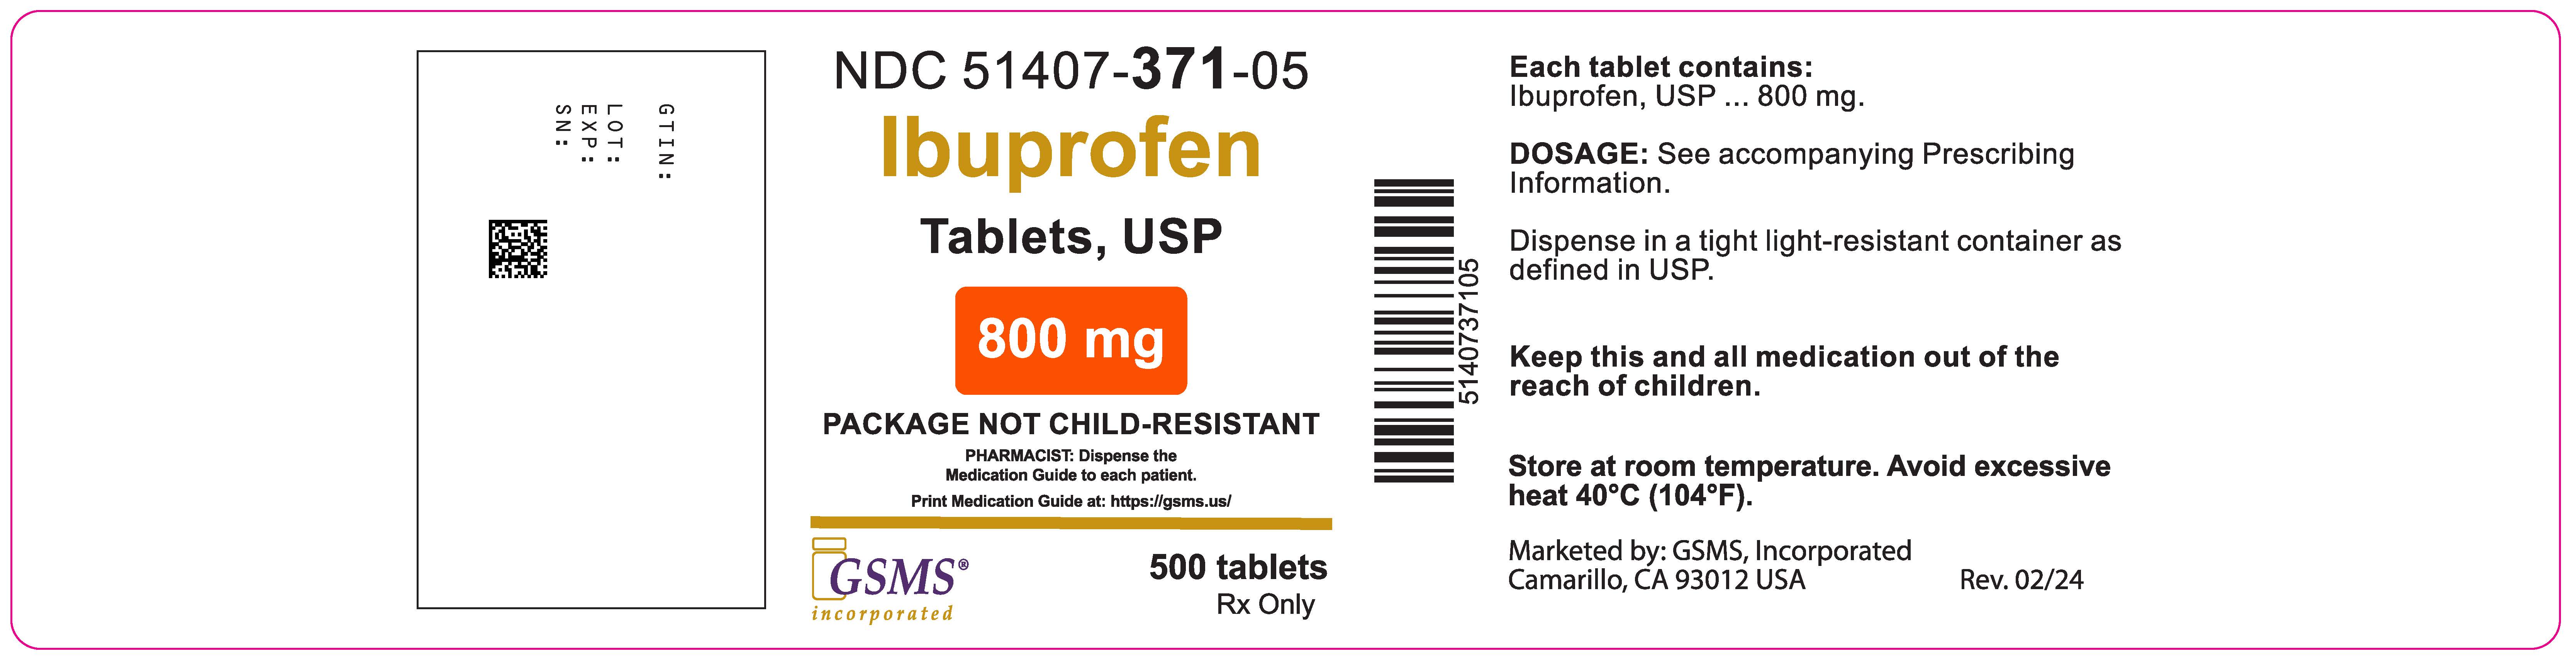 51407-371-05OL - Ibuprofen 800mg - Rev. 0224.jpg